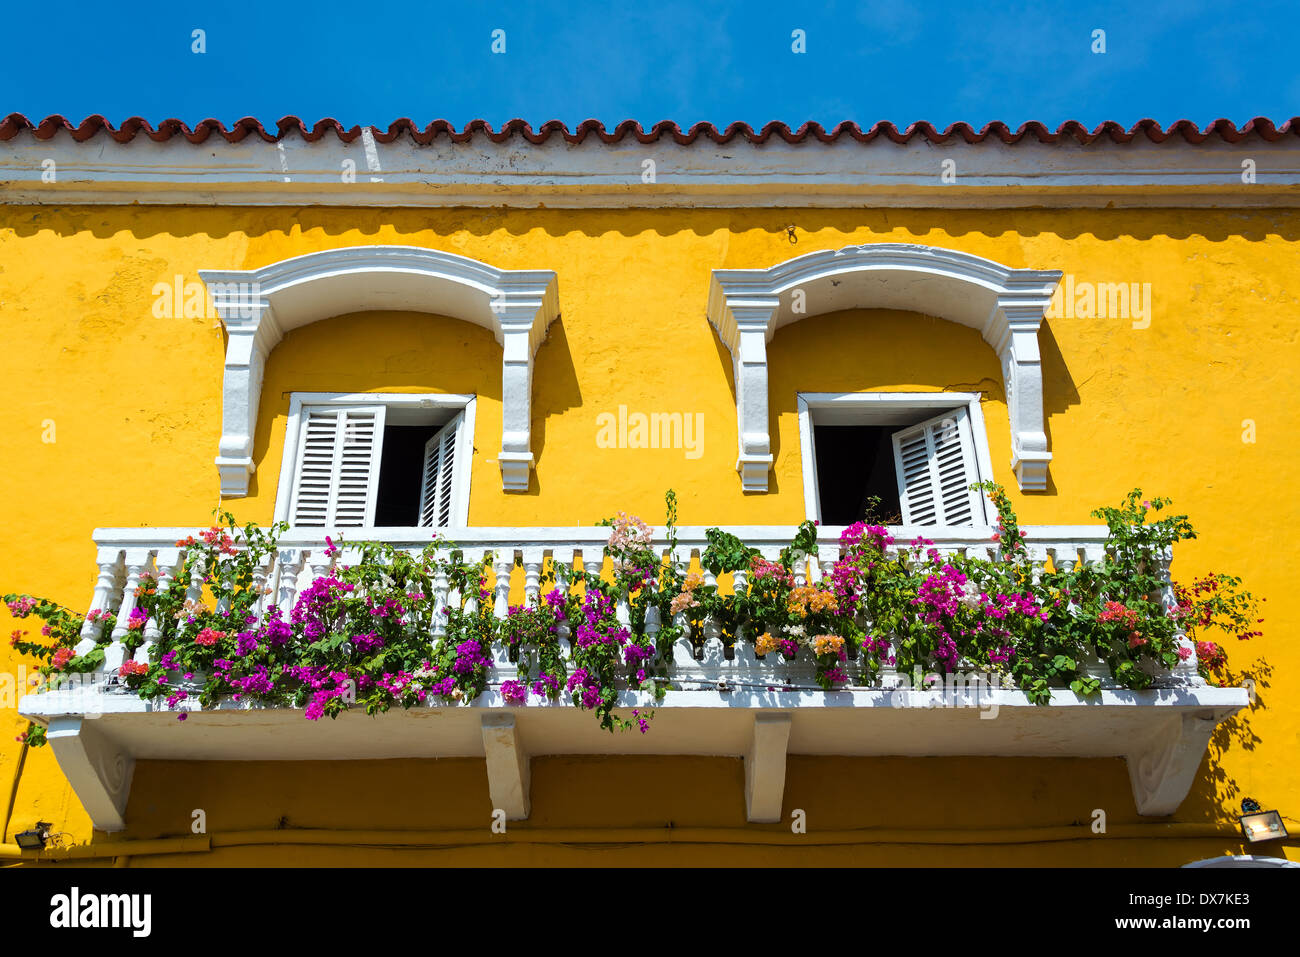 Storica in giallo e bianco balcone a Cartagena, Colombia con fiori colorati Foto Stock